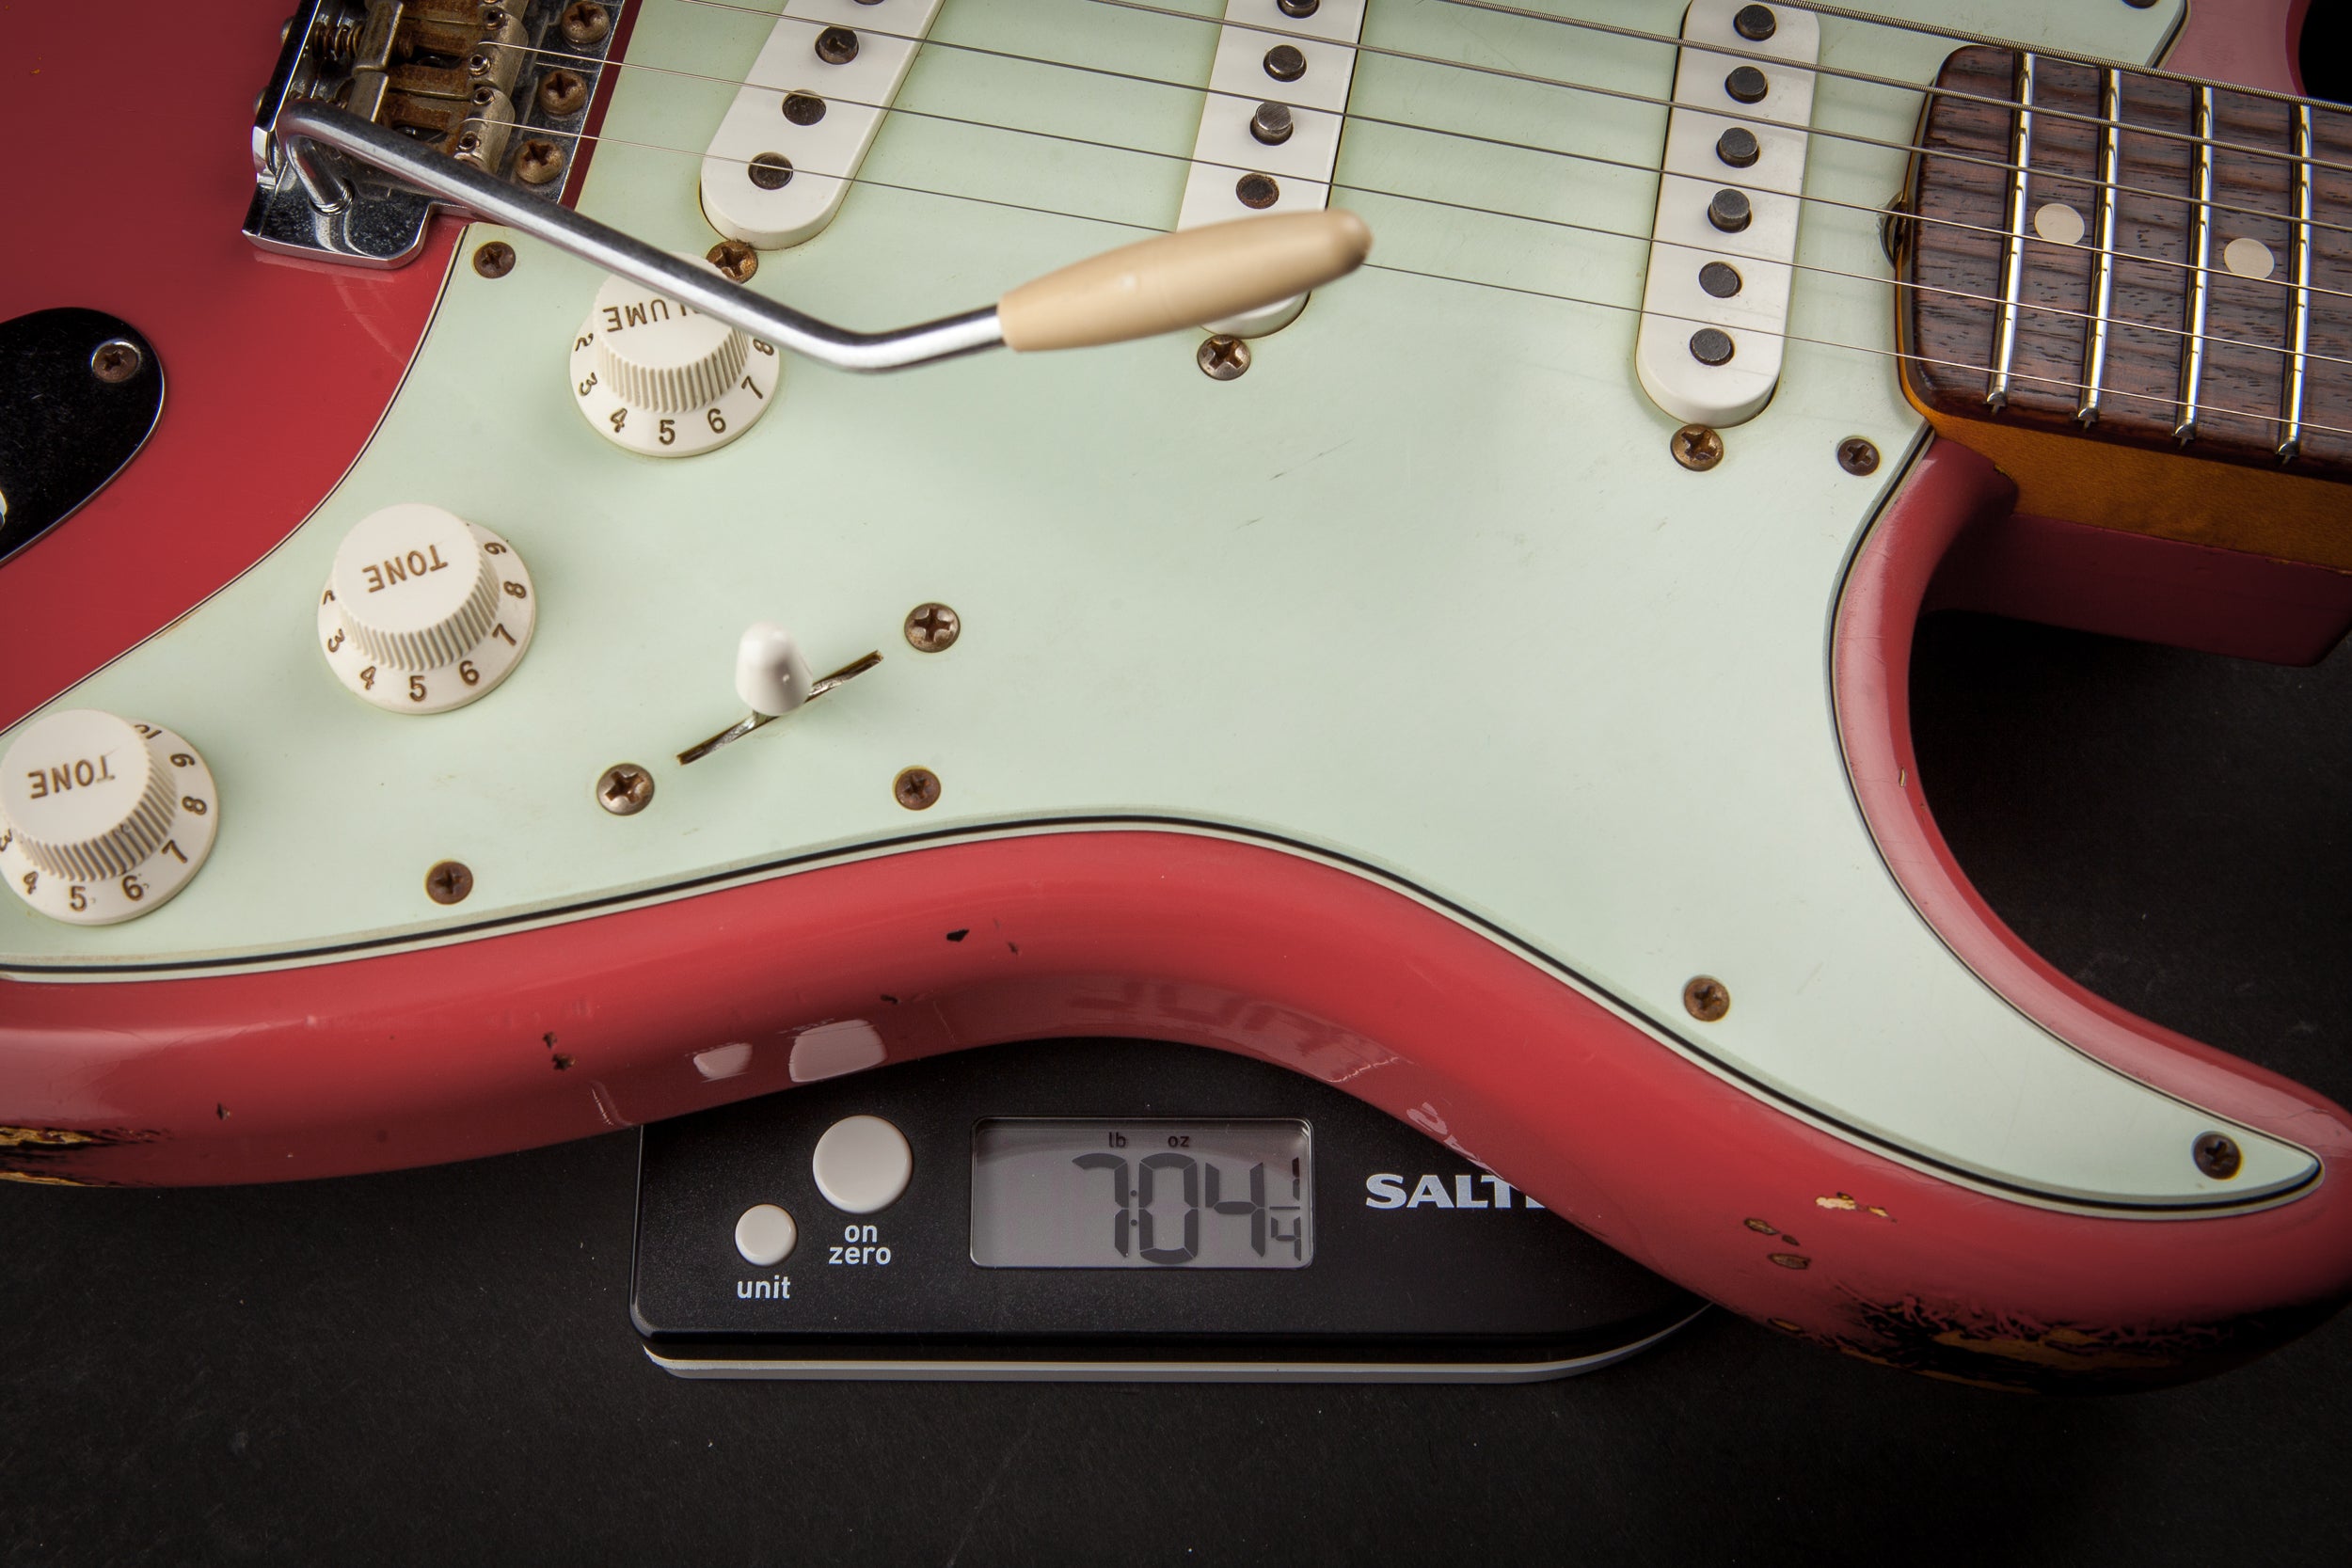 Fender Custom Shop: Stratocaster '60 Relic Fiesta Red Over Sunburst #R71995